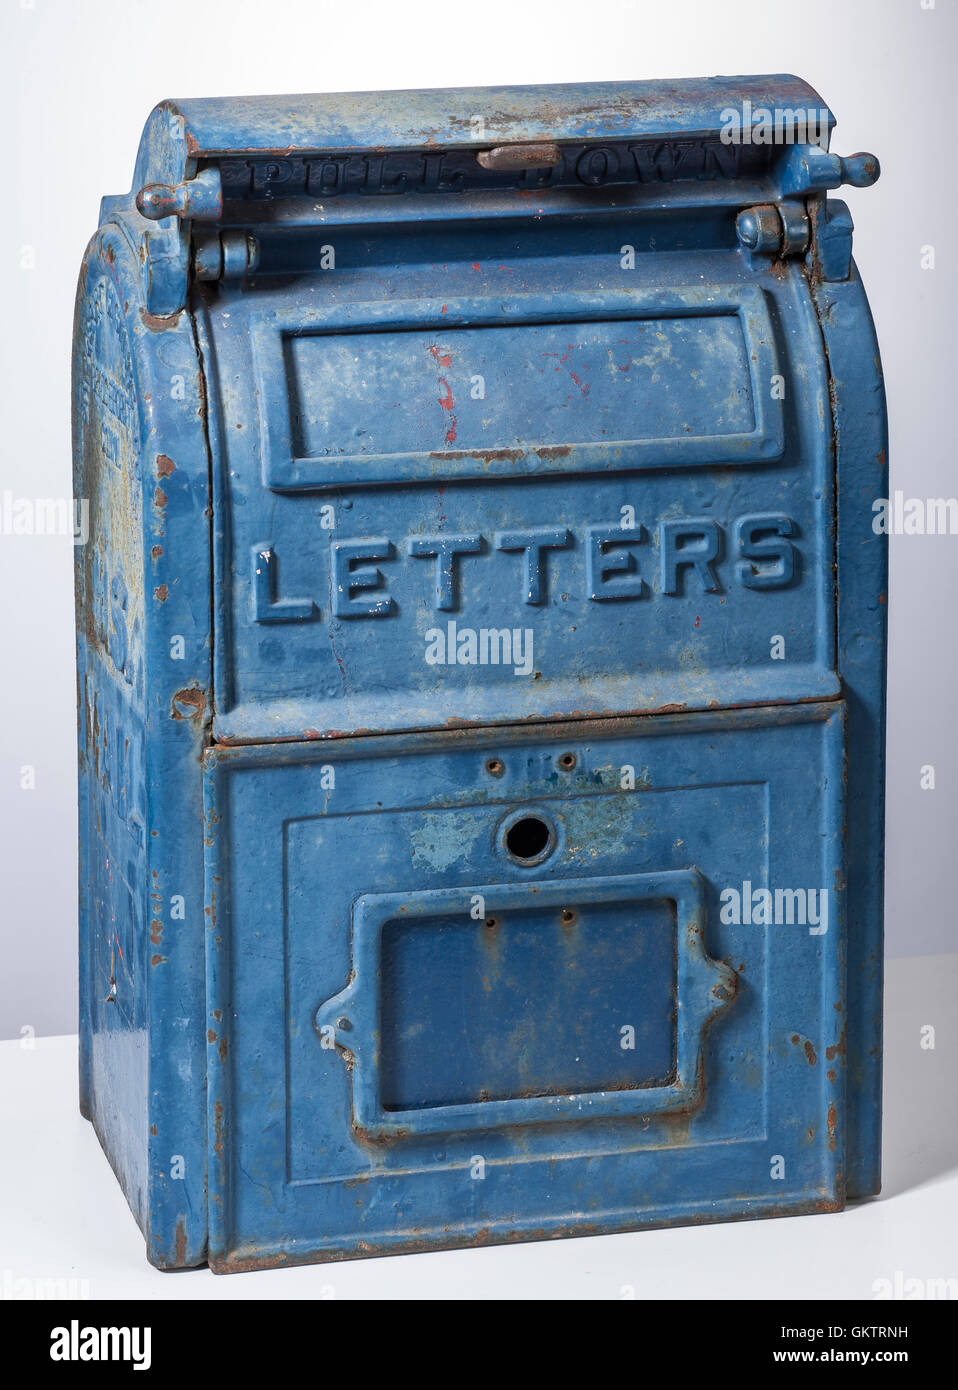 Alte US-Letter-Box Briefkasten Stockfoto